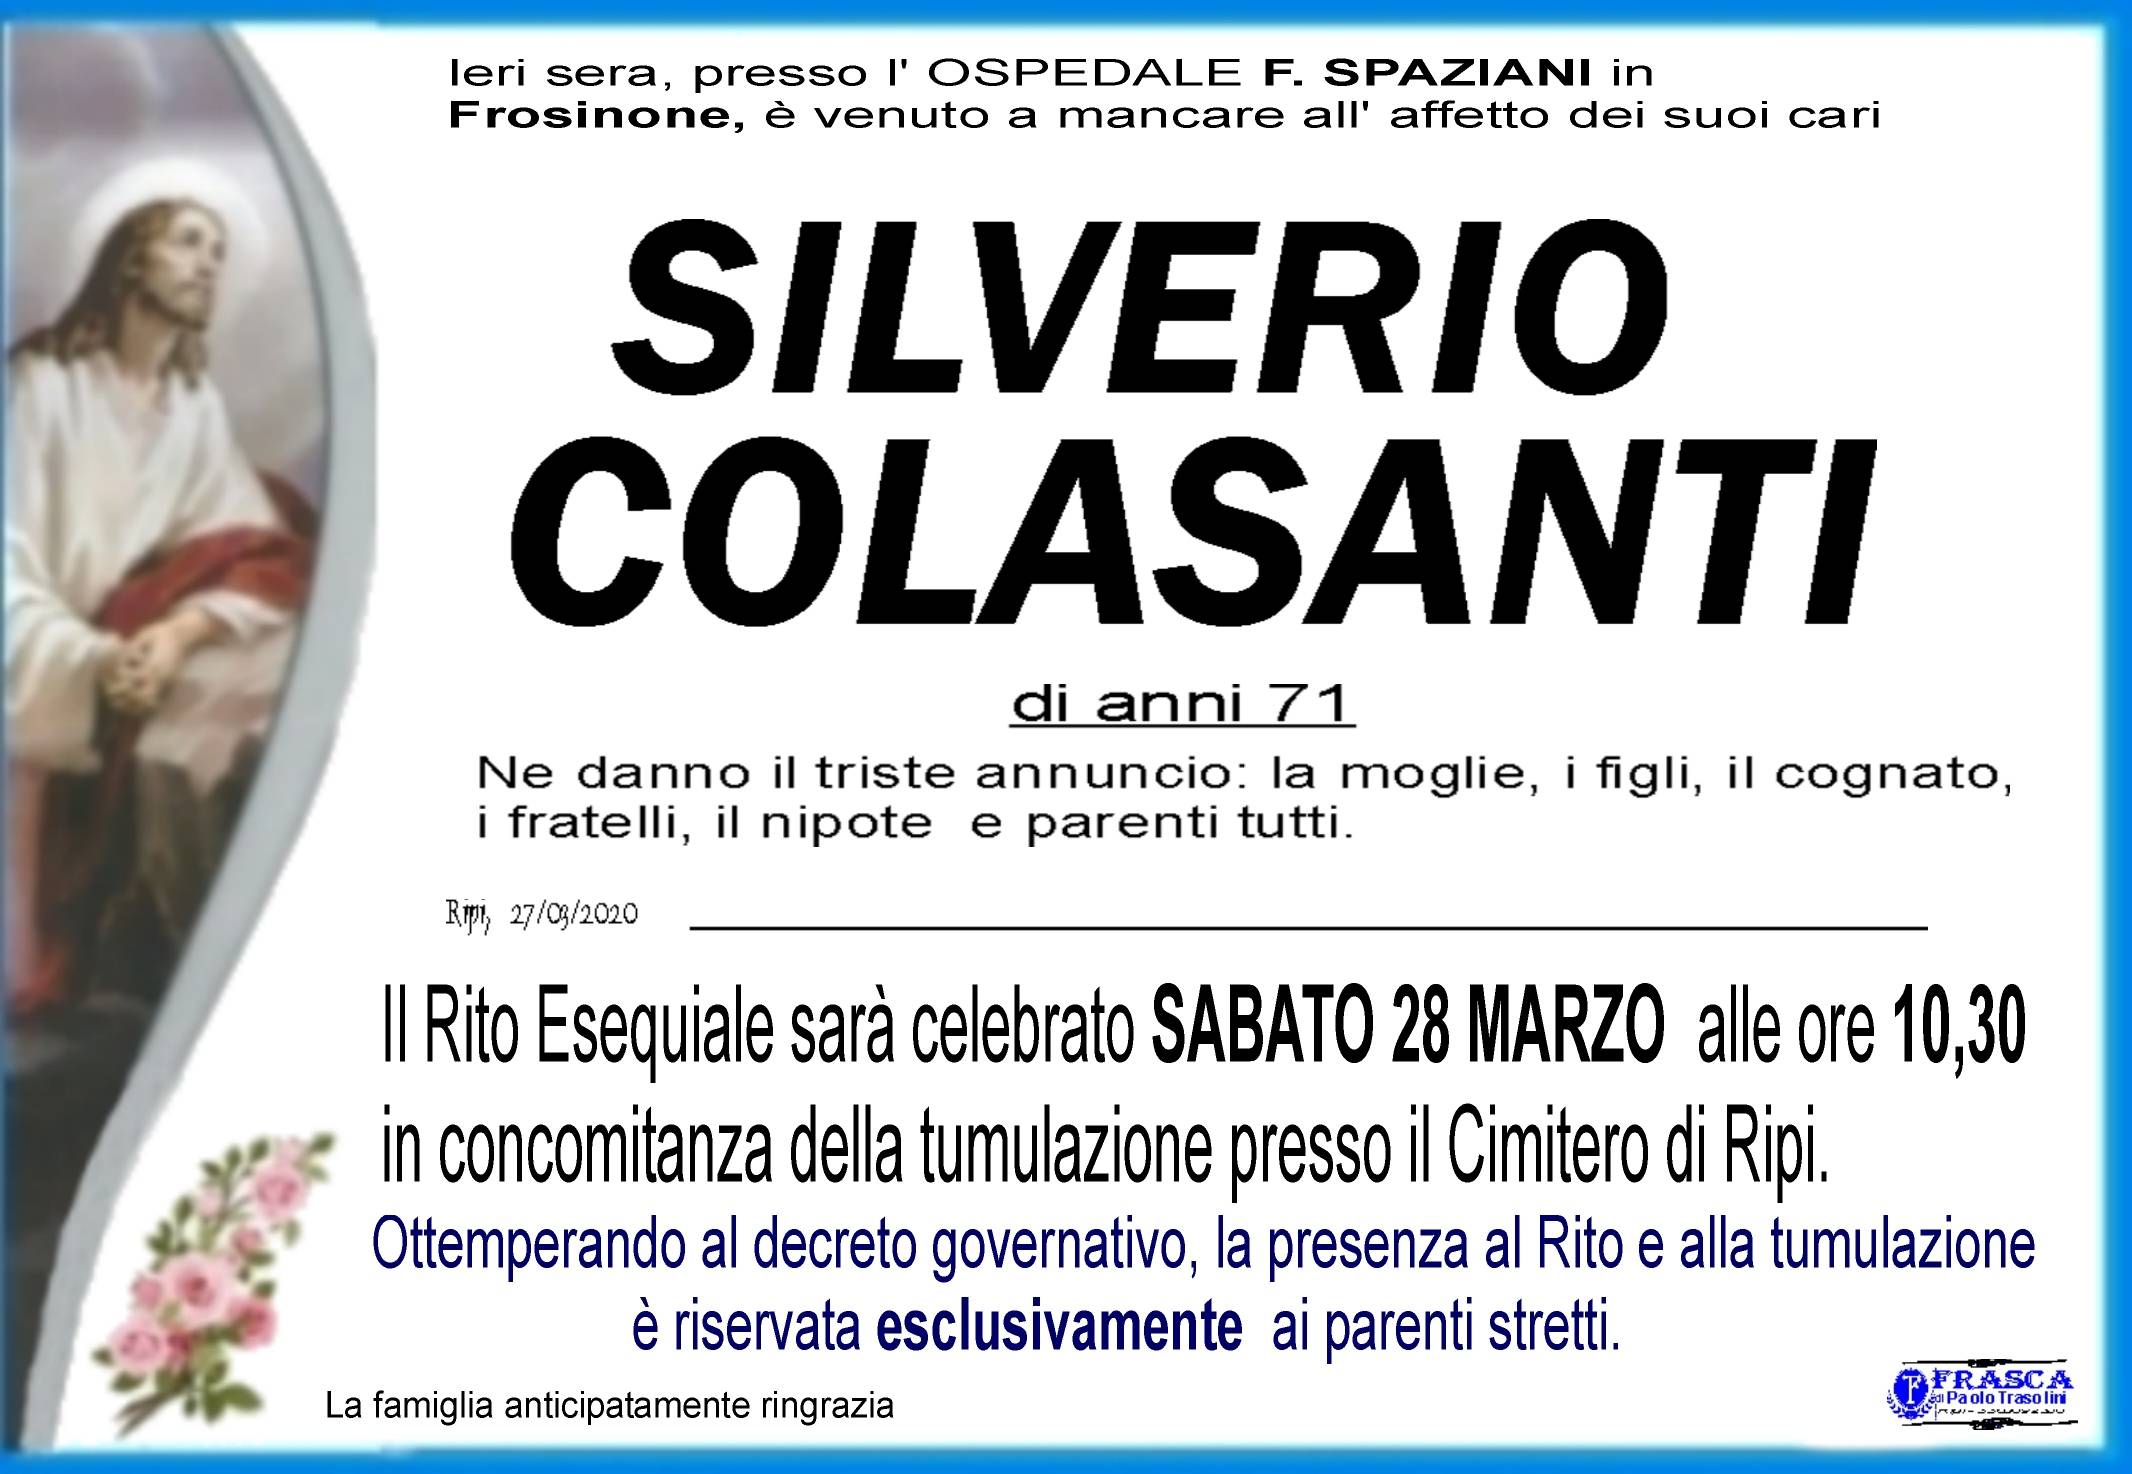 Silverio Colasanti